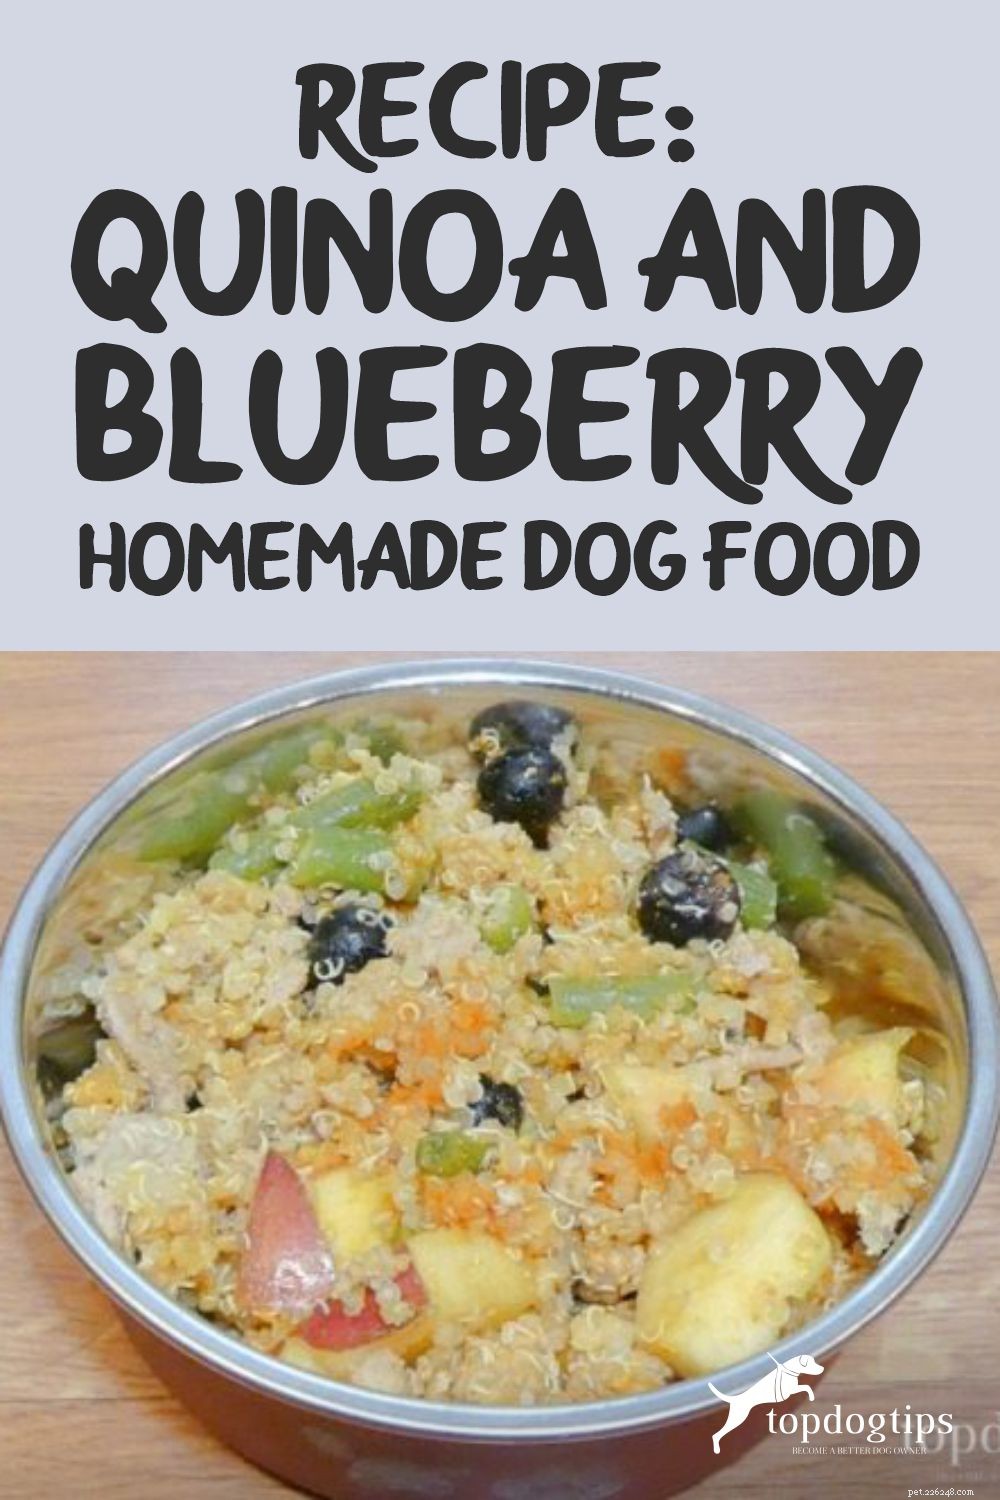 레시피:퀴노아와 블루베리 수제 개밥